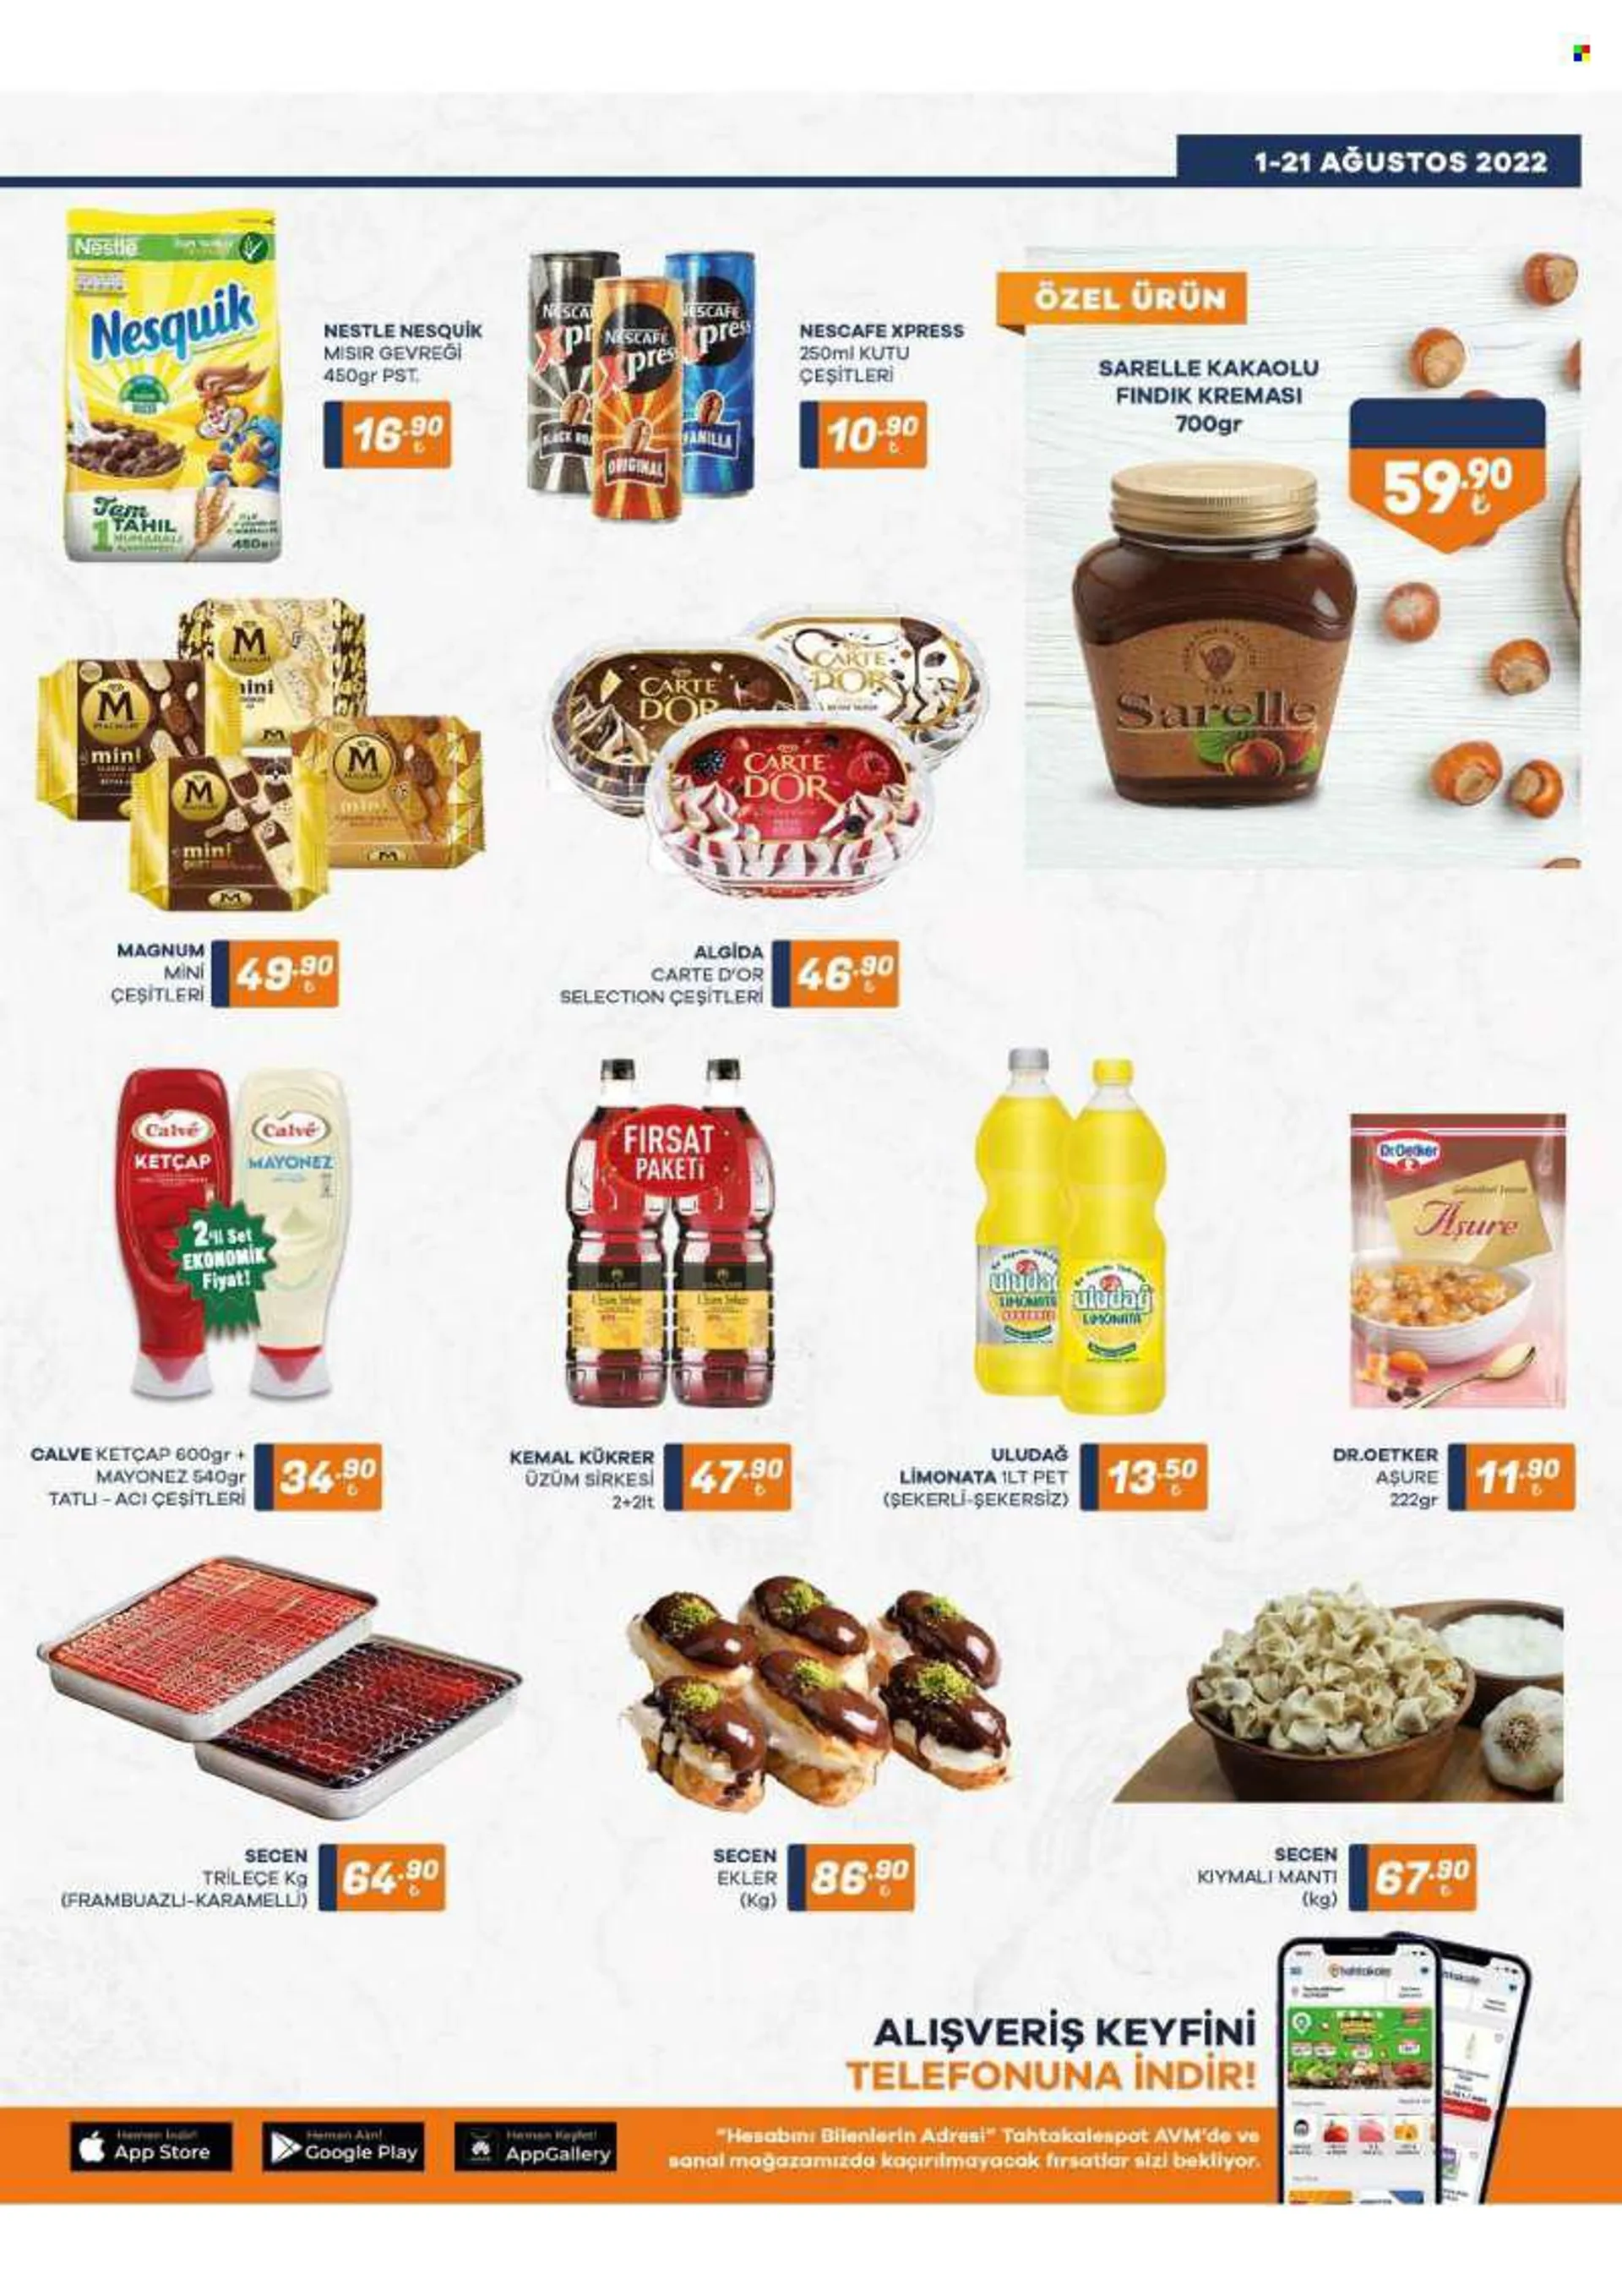 Tahtakale Spot aktüel ürünler, broşür  - 8.1.2022 - 8.21.2022 - Satıştaki ürünler - sarelle, mayonez, nesquik, nestle, ketçap, calve, ekler. Sayfa 3.